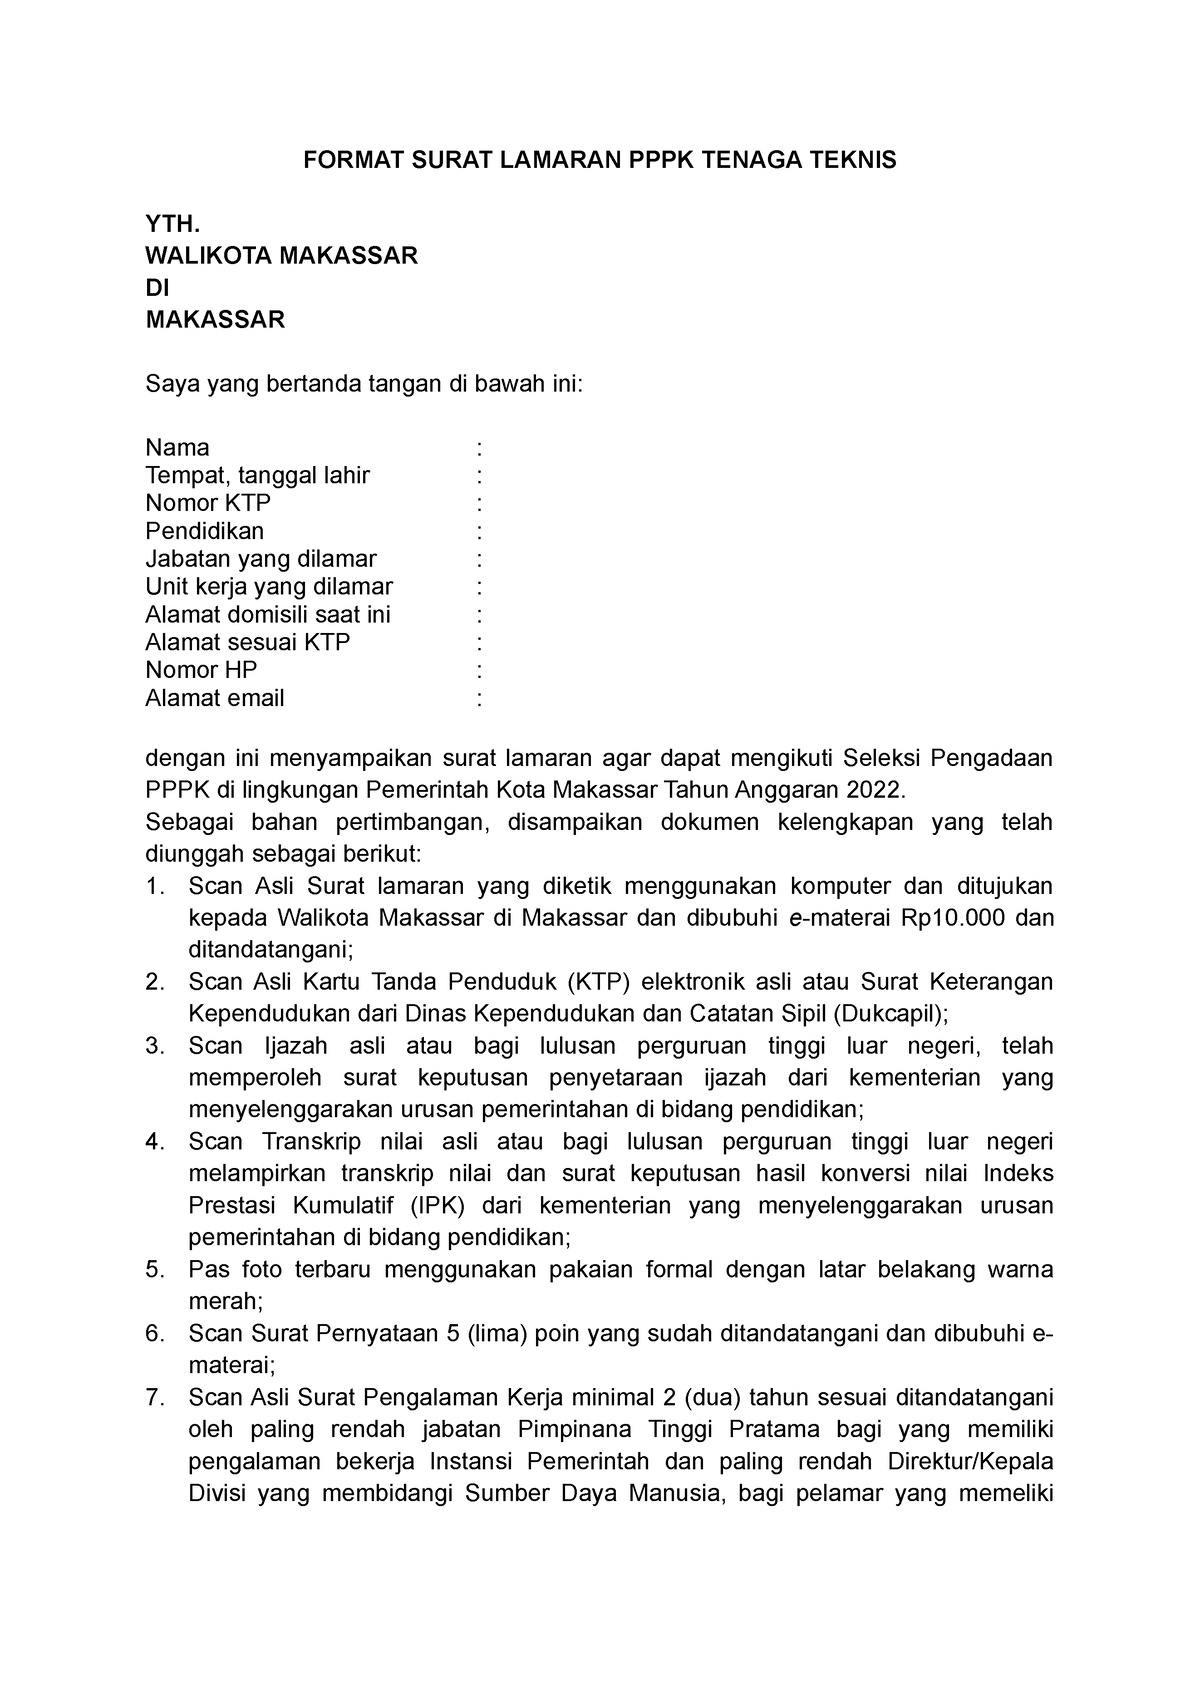 Format Surat Lamaran Pppk Teknis Pemkot Makassar Tahun Format Surat Lamaran Pppk Tenaga